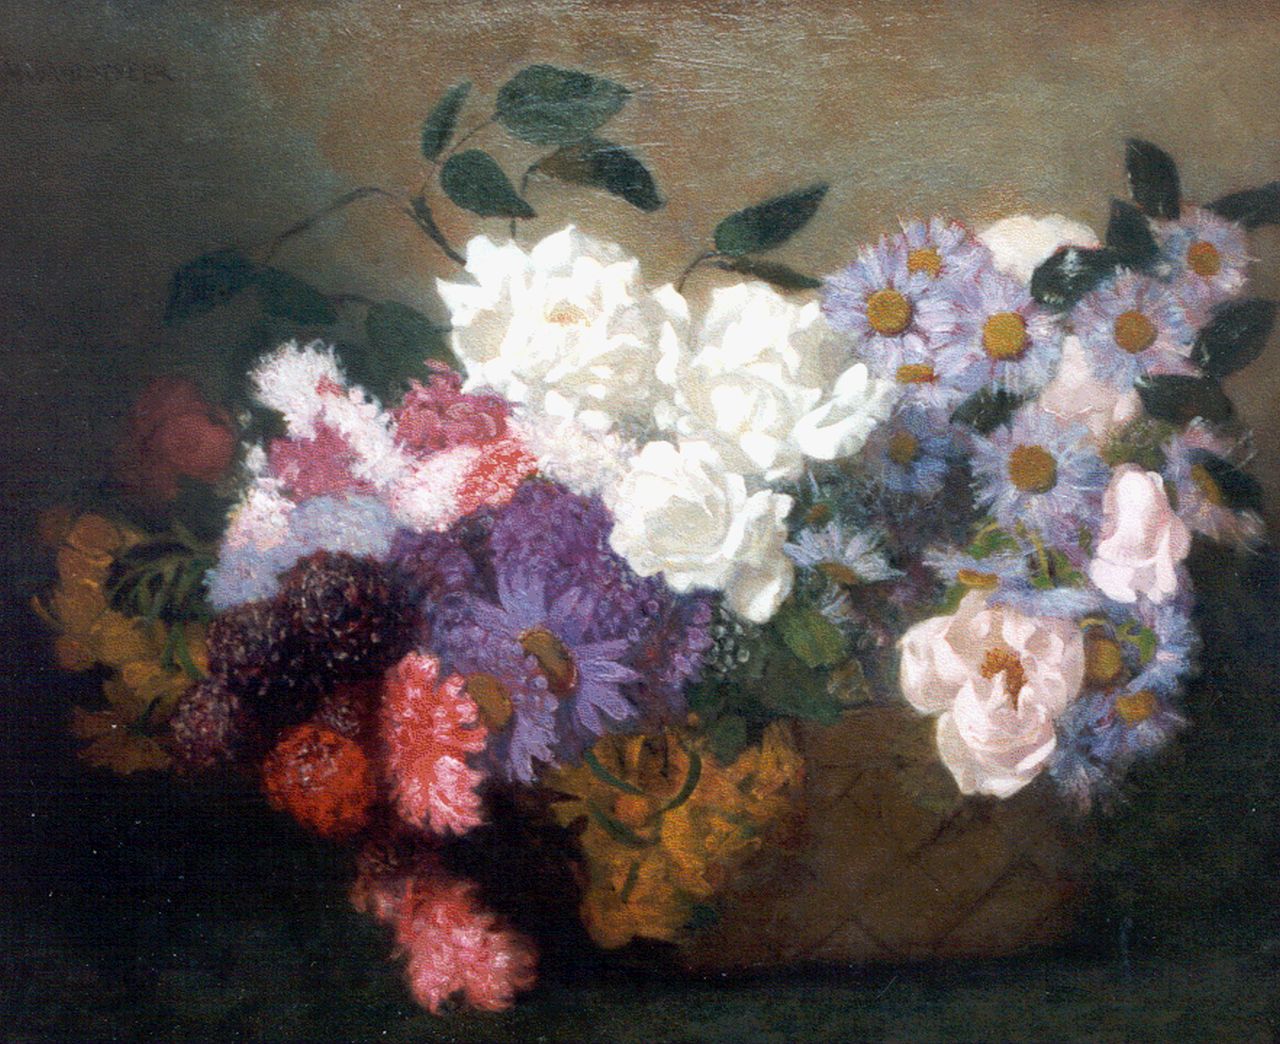 Wandscheer M.W.  | Maria Wilhelmina 'Marie' Wandscheer, A basket with flowers, Öl auf Leinwand 55,0 x 65,7 cm, signed u.l.